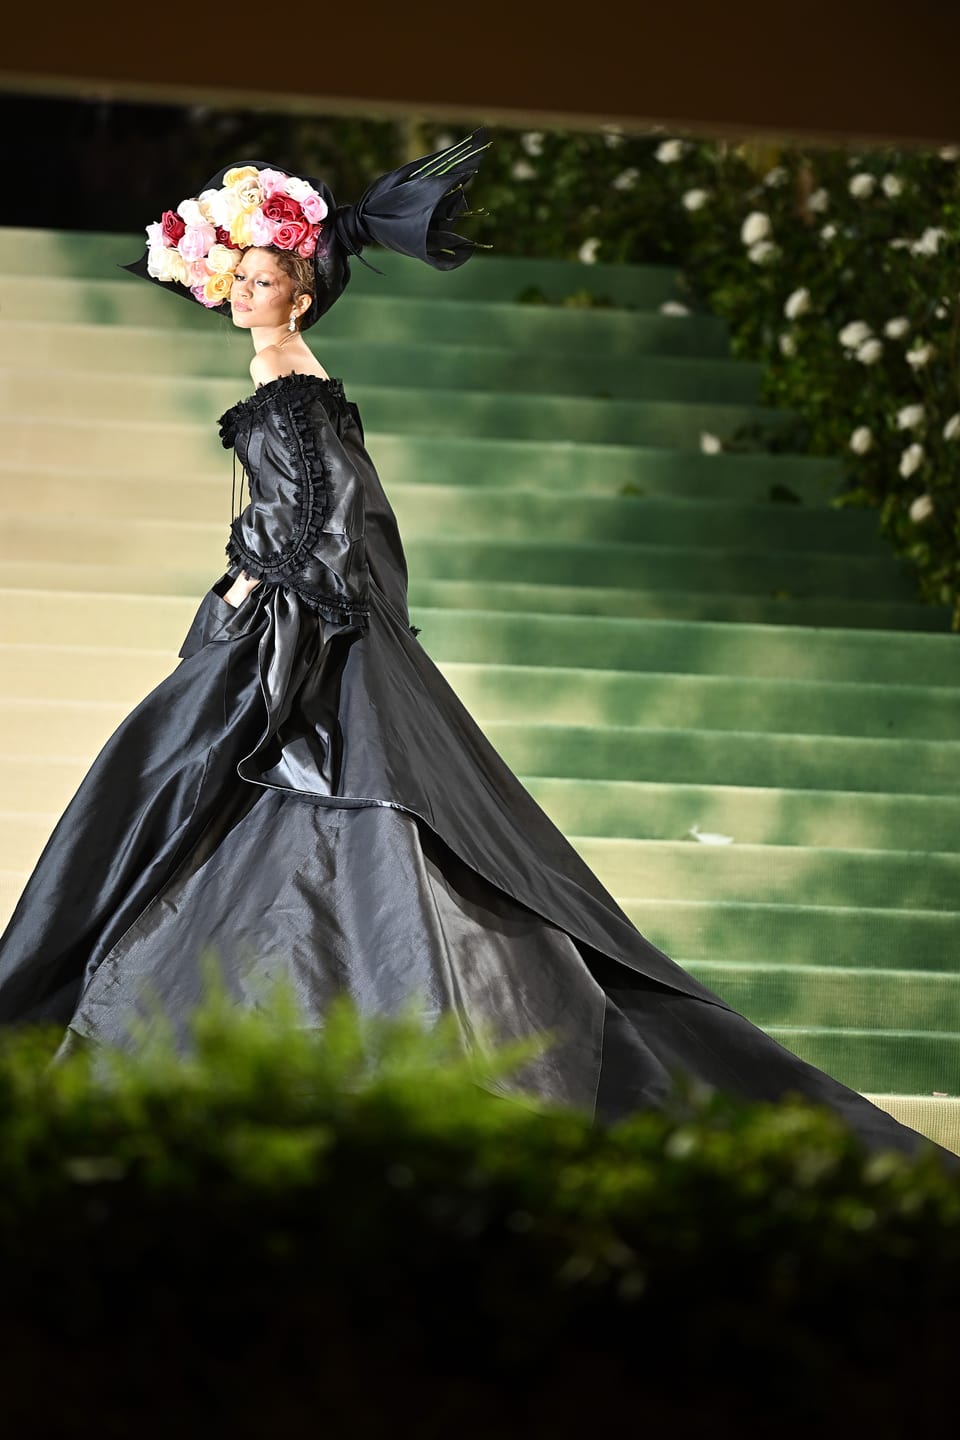 Frau in schwarzer Robe mit Blumenschmuck auf dem Kopf